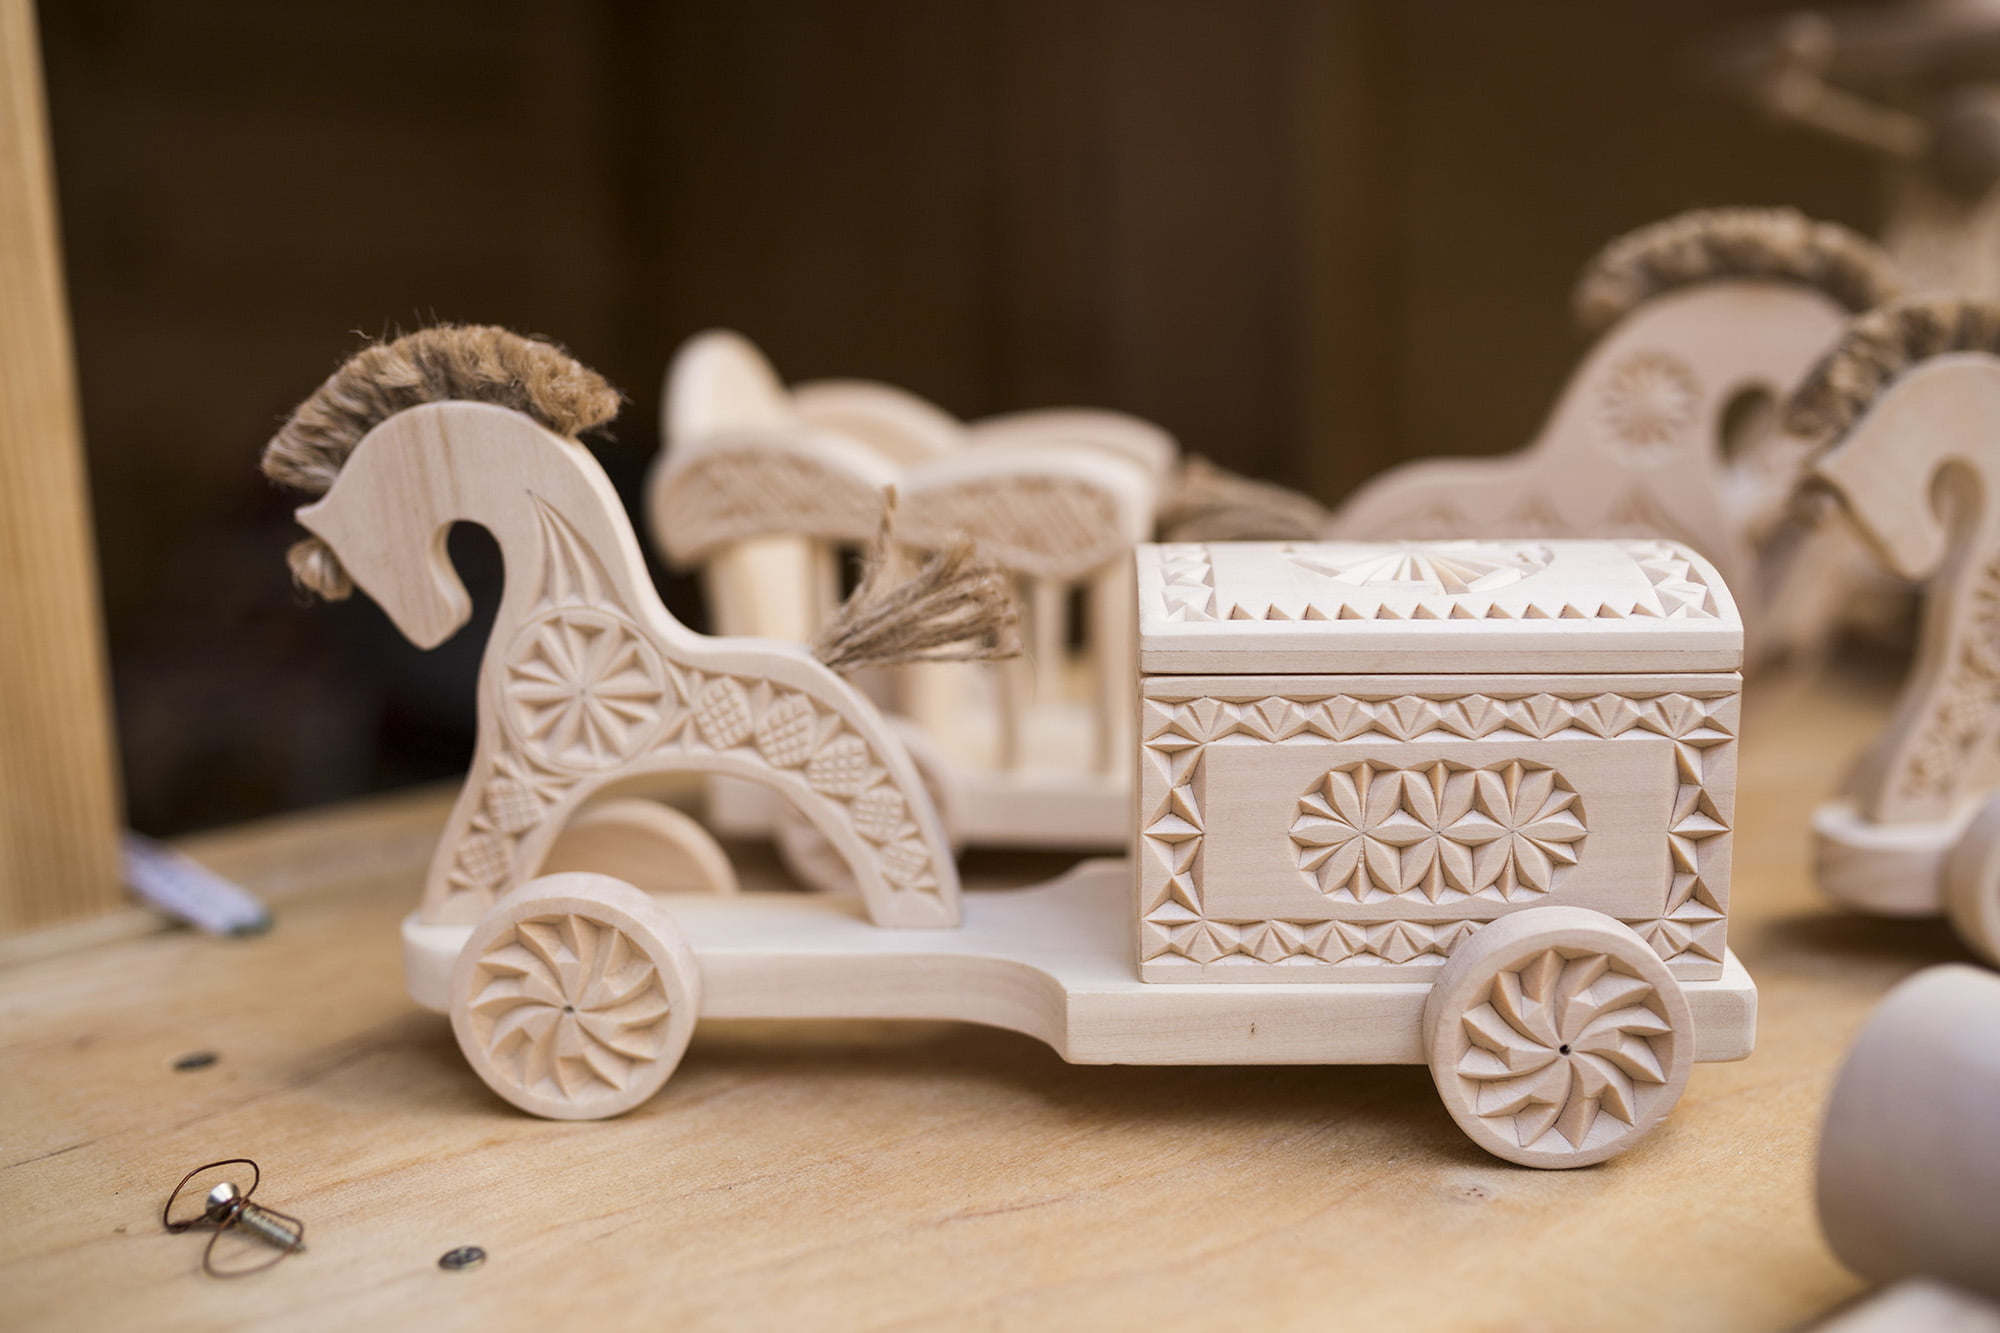 [Zabawki drewniane w kształcie małych koni, wozu i kuferka. Wszystkie elementy zdobione pięknymi wzorami.]